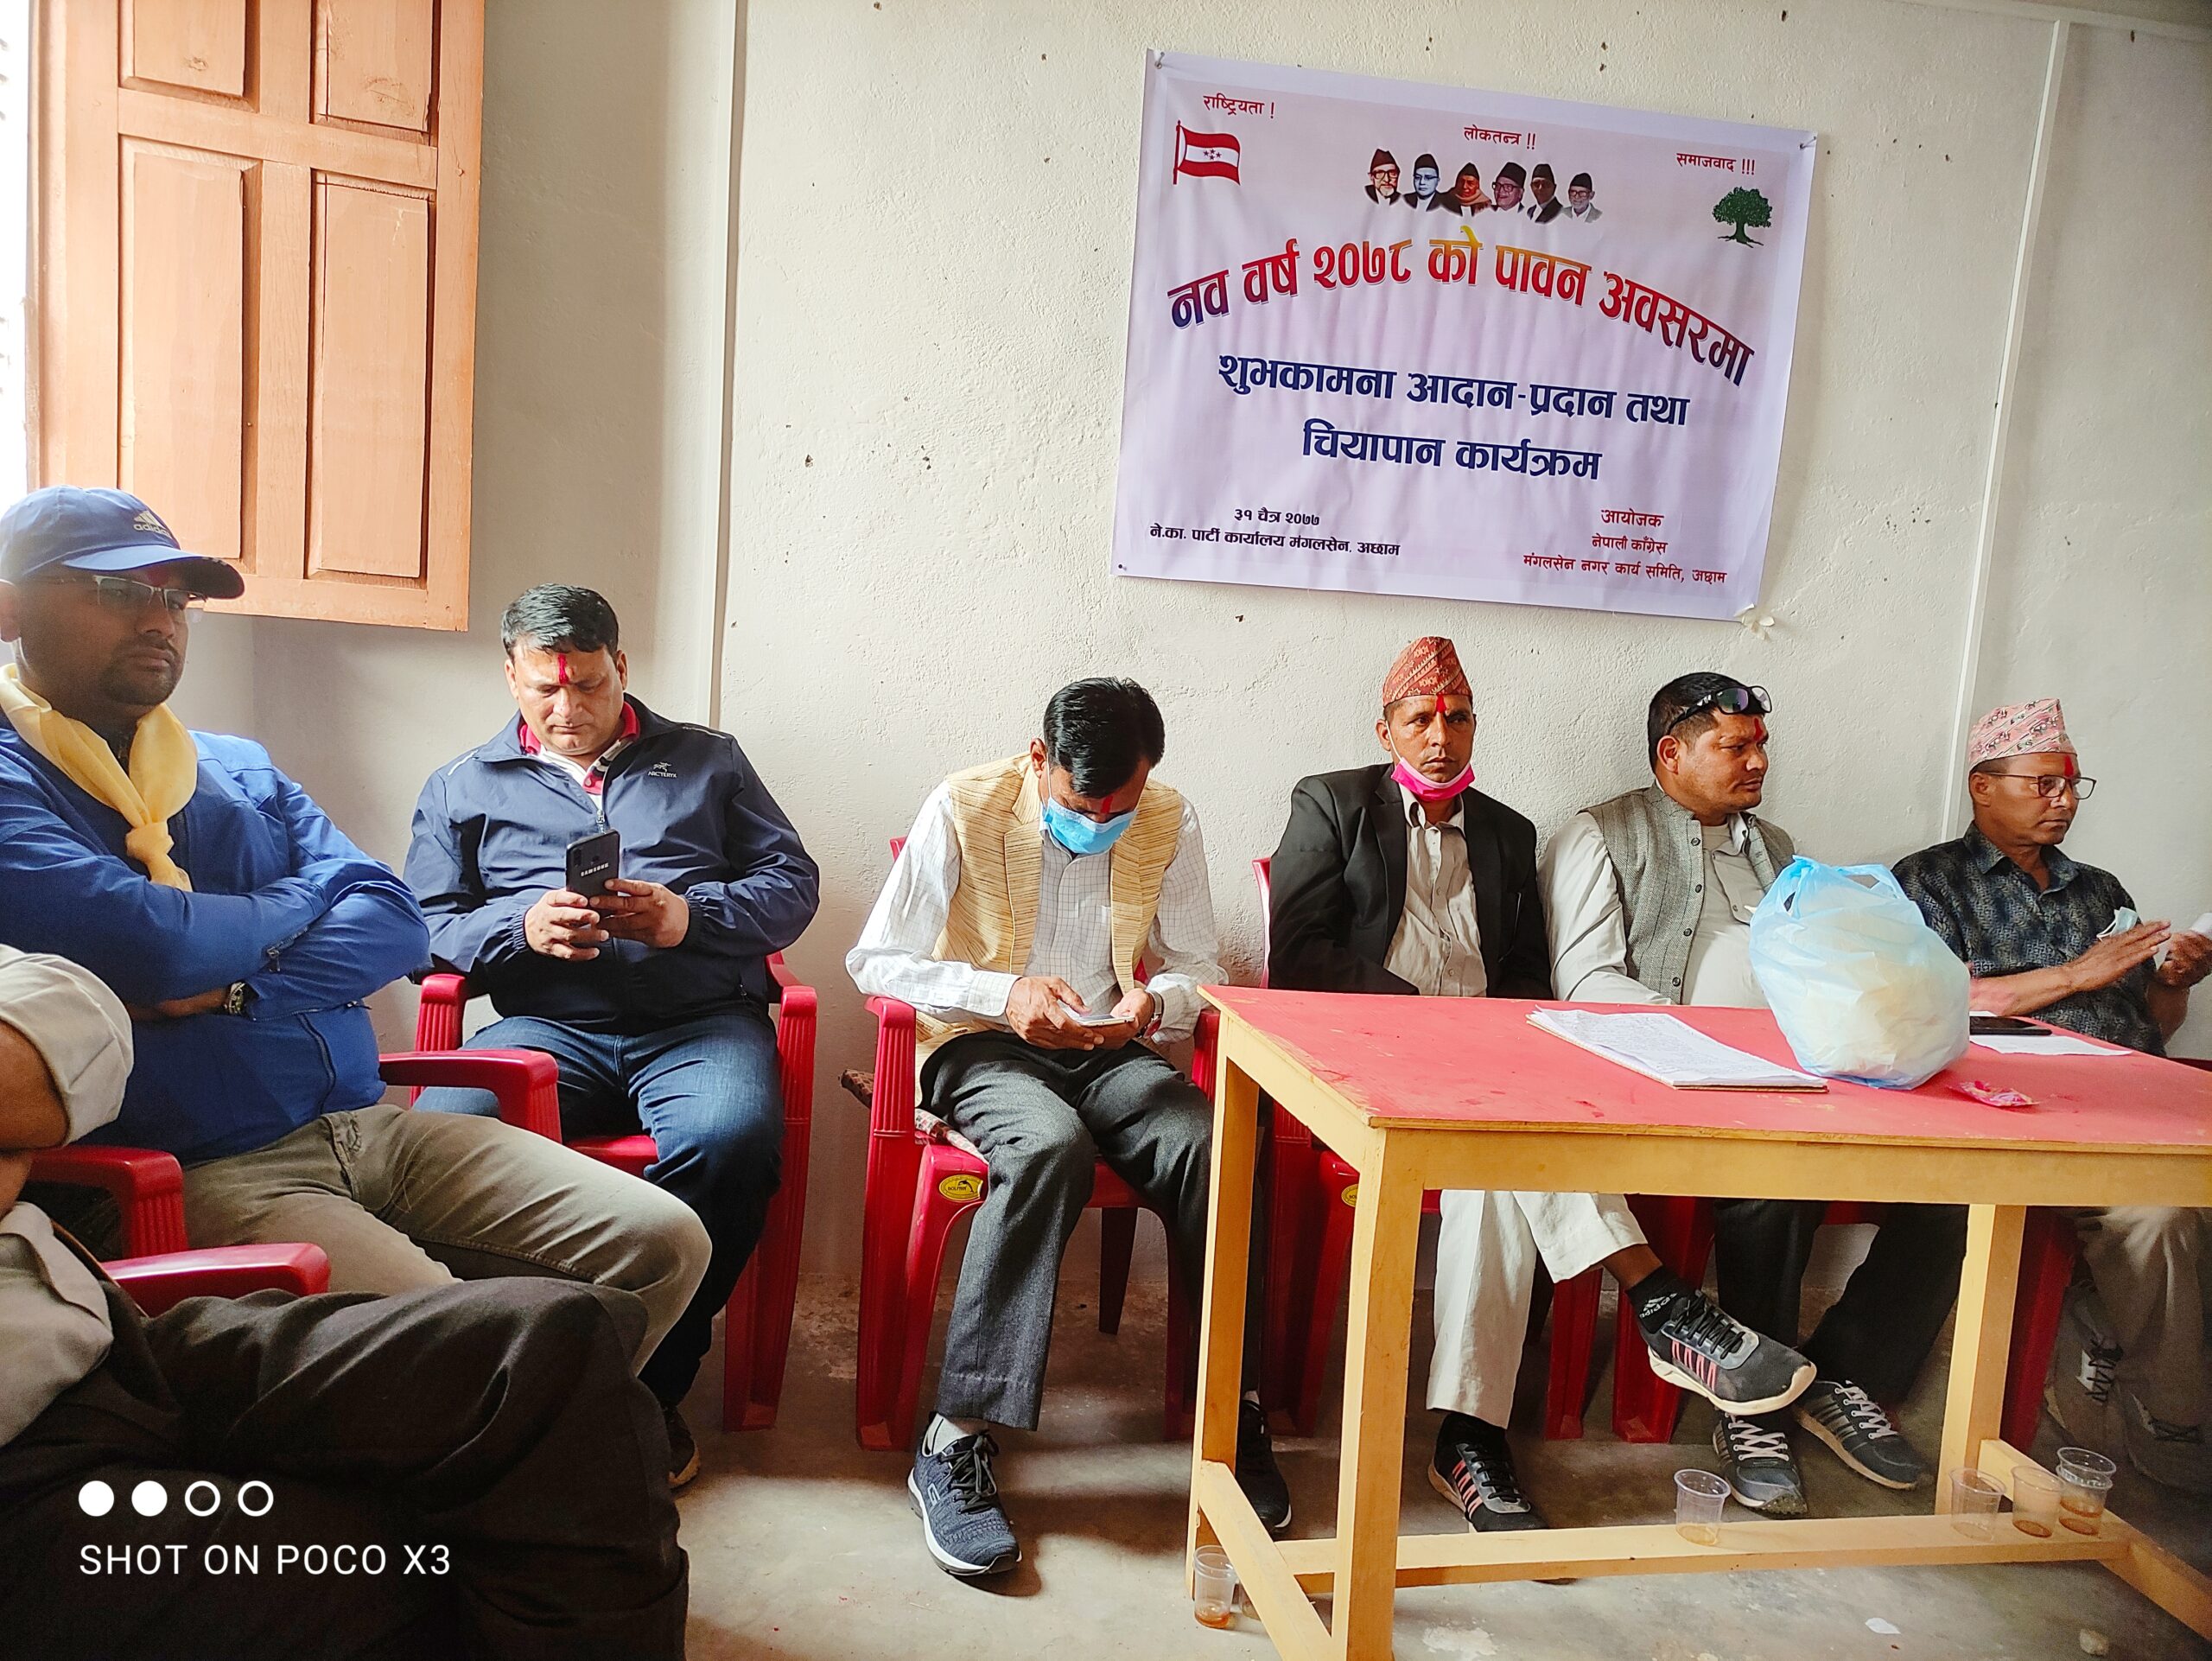 नेपाली काङ्ग्रेस मंगलसेन नगर कार्यसमिति द्वारा शुभकामना आदानप्रदान कार्यक्रम सम्पन्न